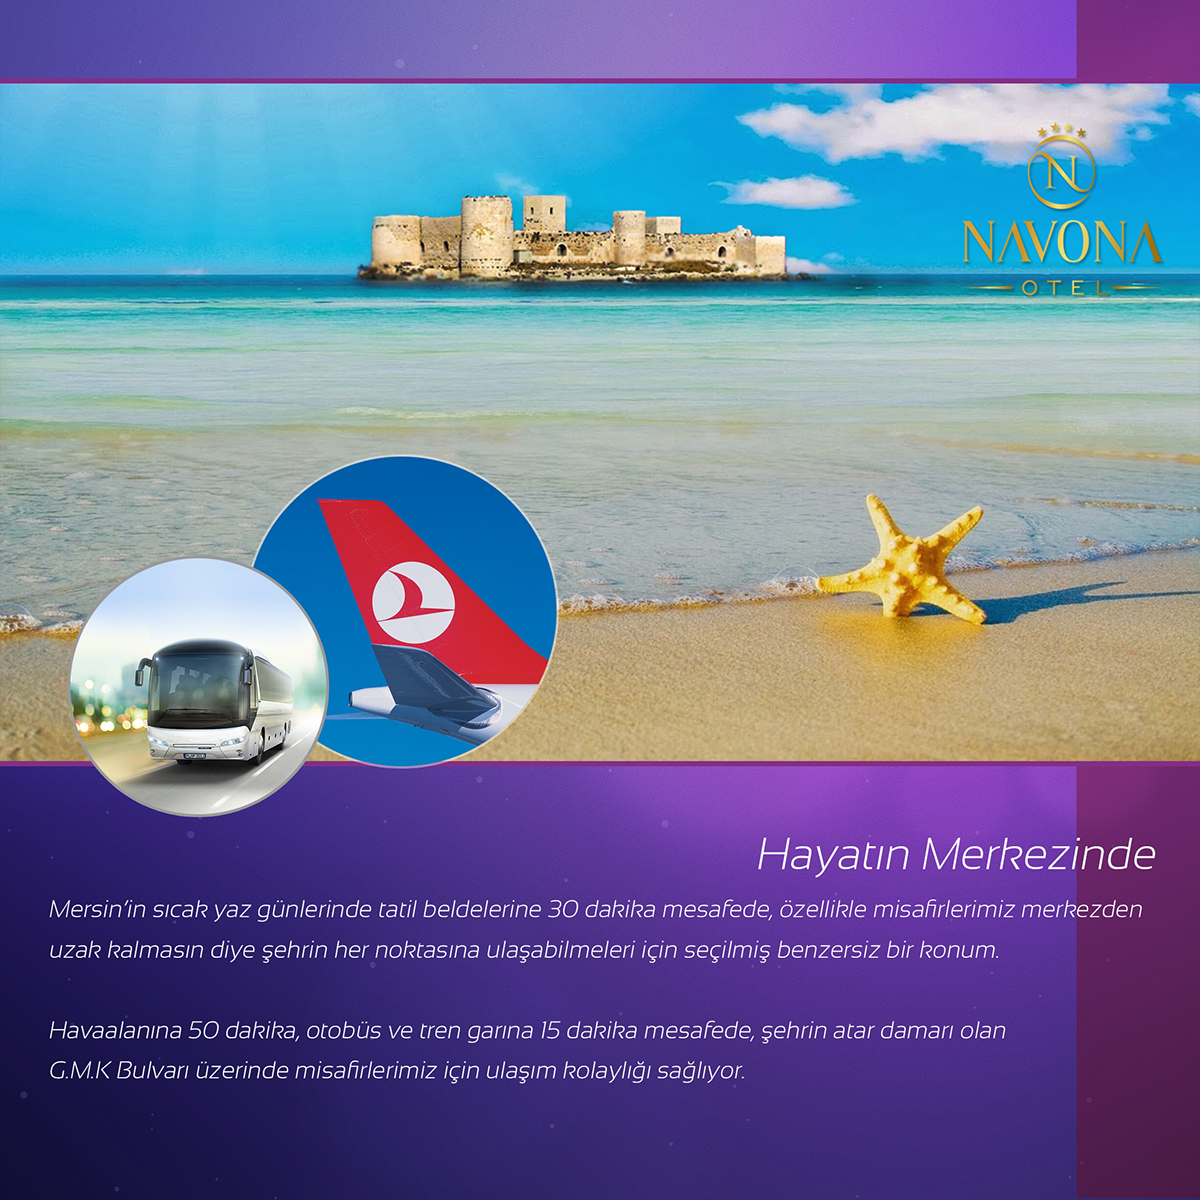 Navona otel hotel catalog